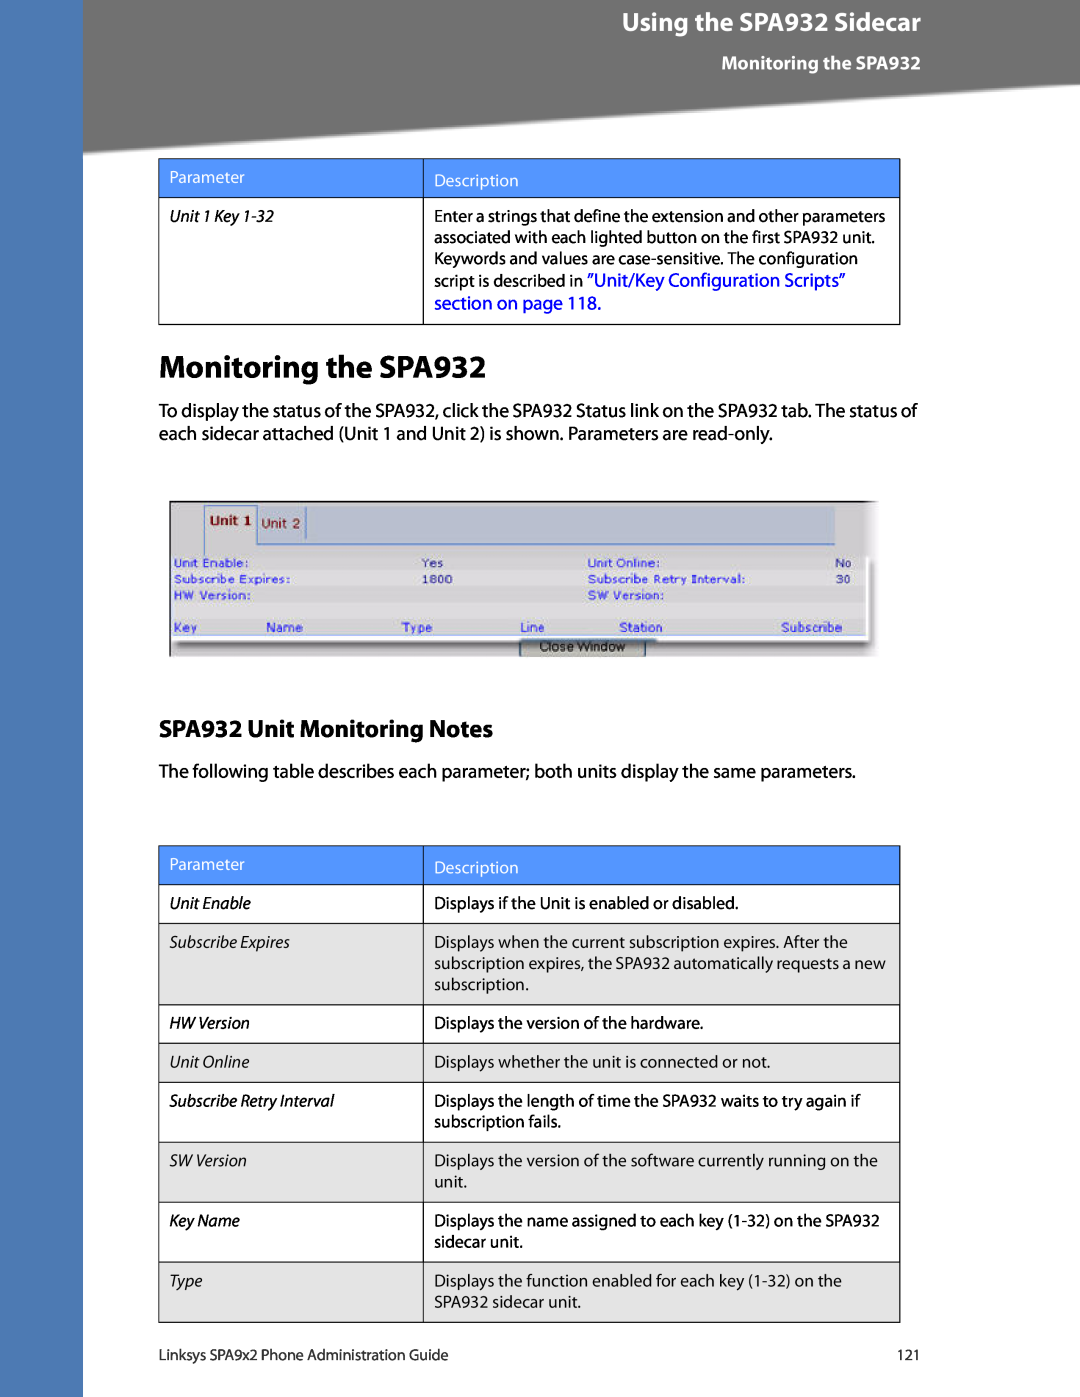 Linksys SPA962, SPA942, SPA922 manual Monitoring the SPA932, SPA932 Unit Monitoring Notes, Using the SPA932 Sidecar 